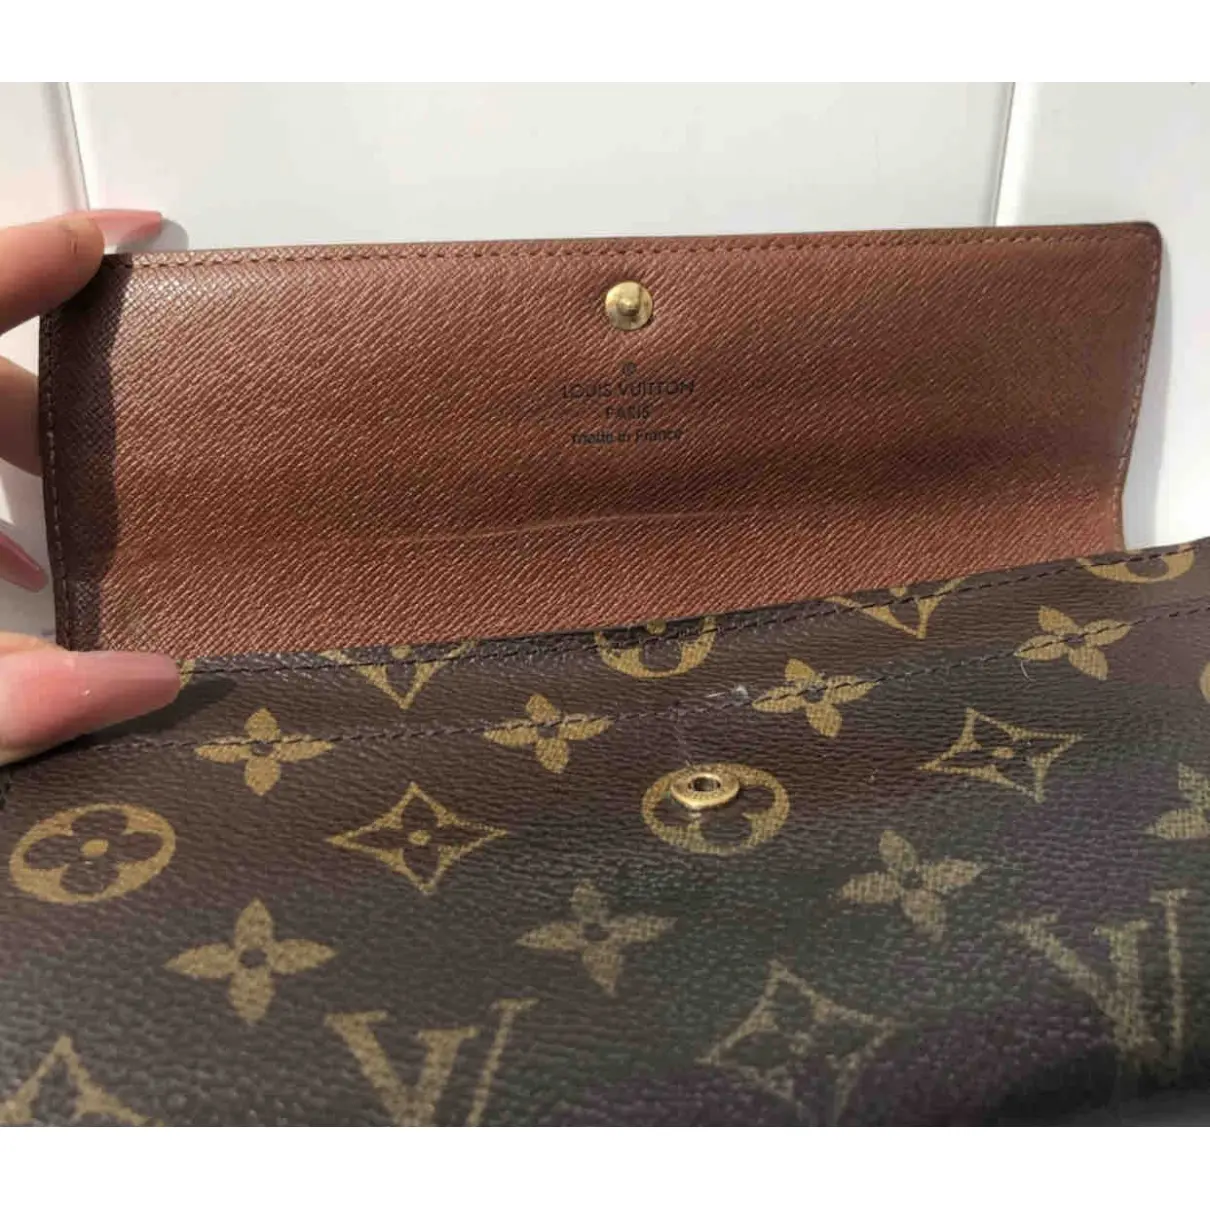 Sarah leather wallet Louis Vuitton - Vintage